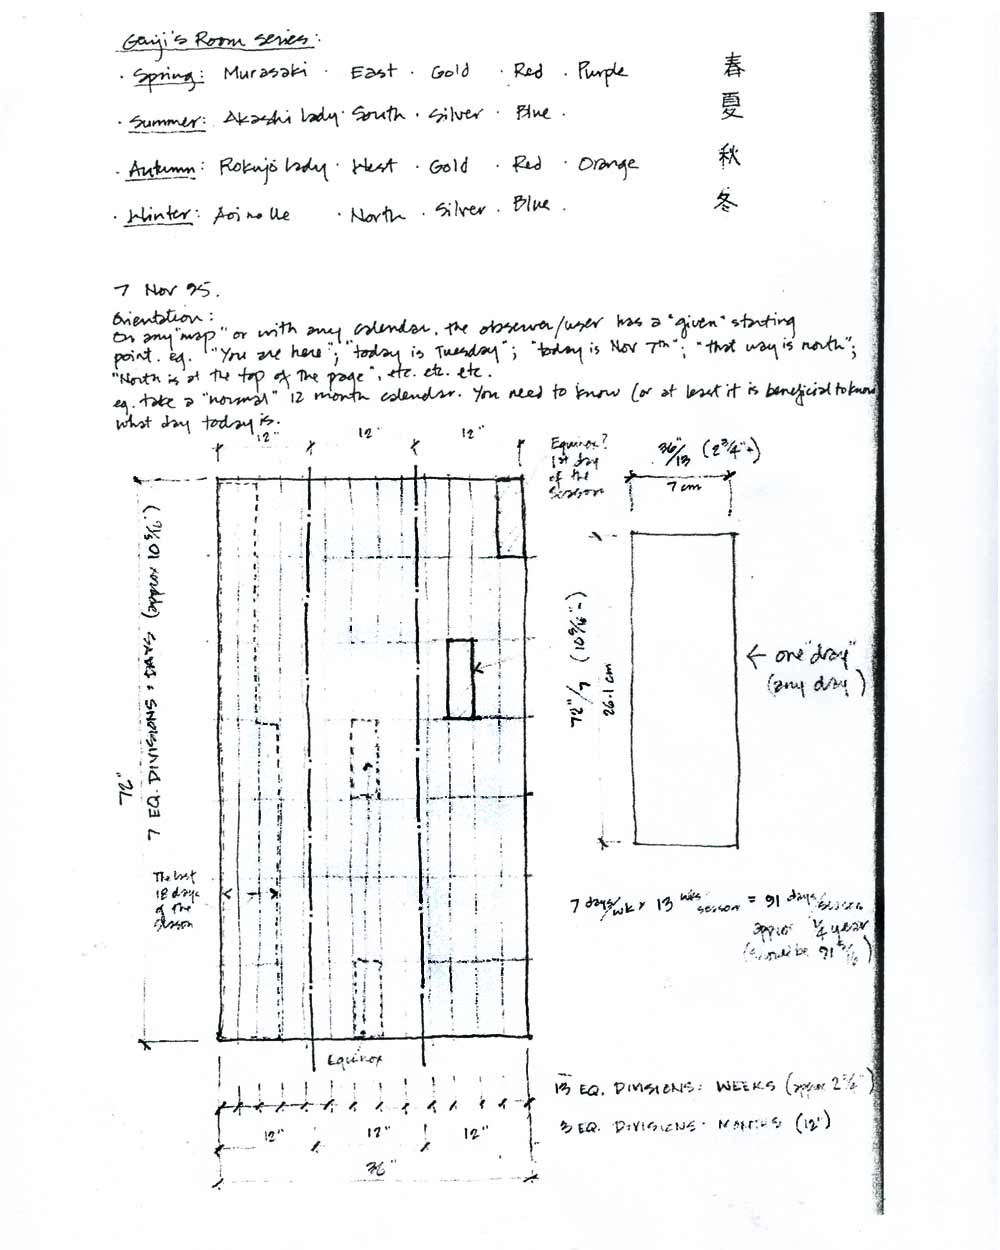 Proposal for Calendar Room, pg 9